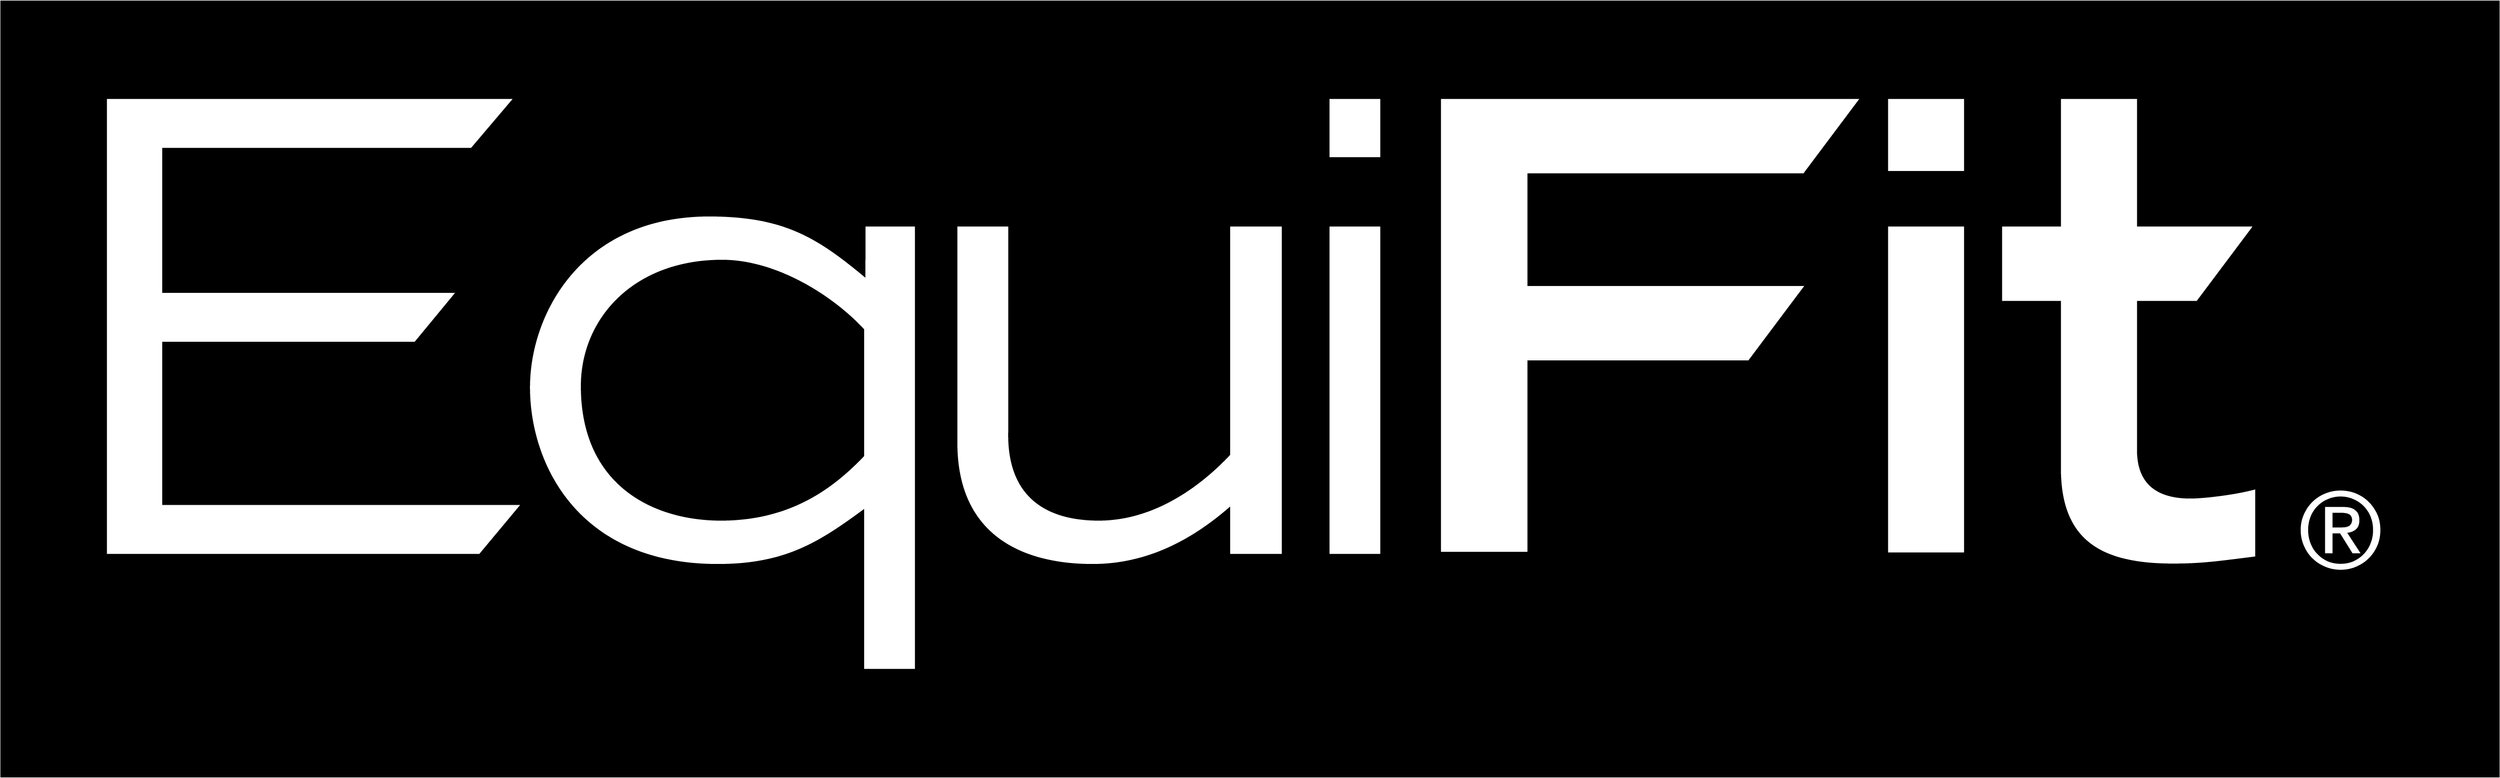 EquiFit_logo-white.jpg